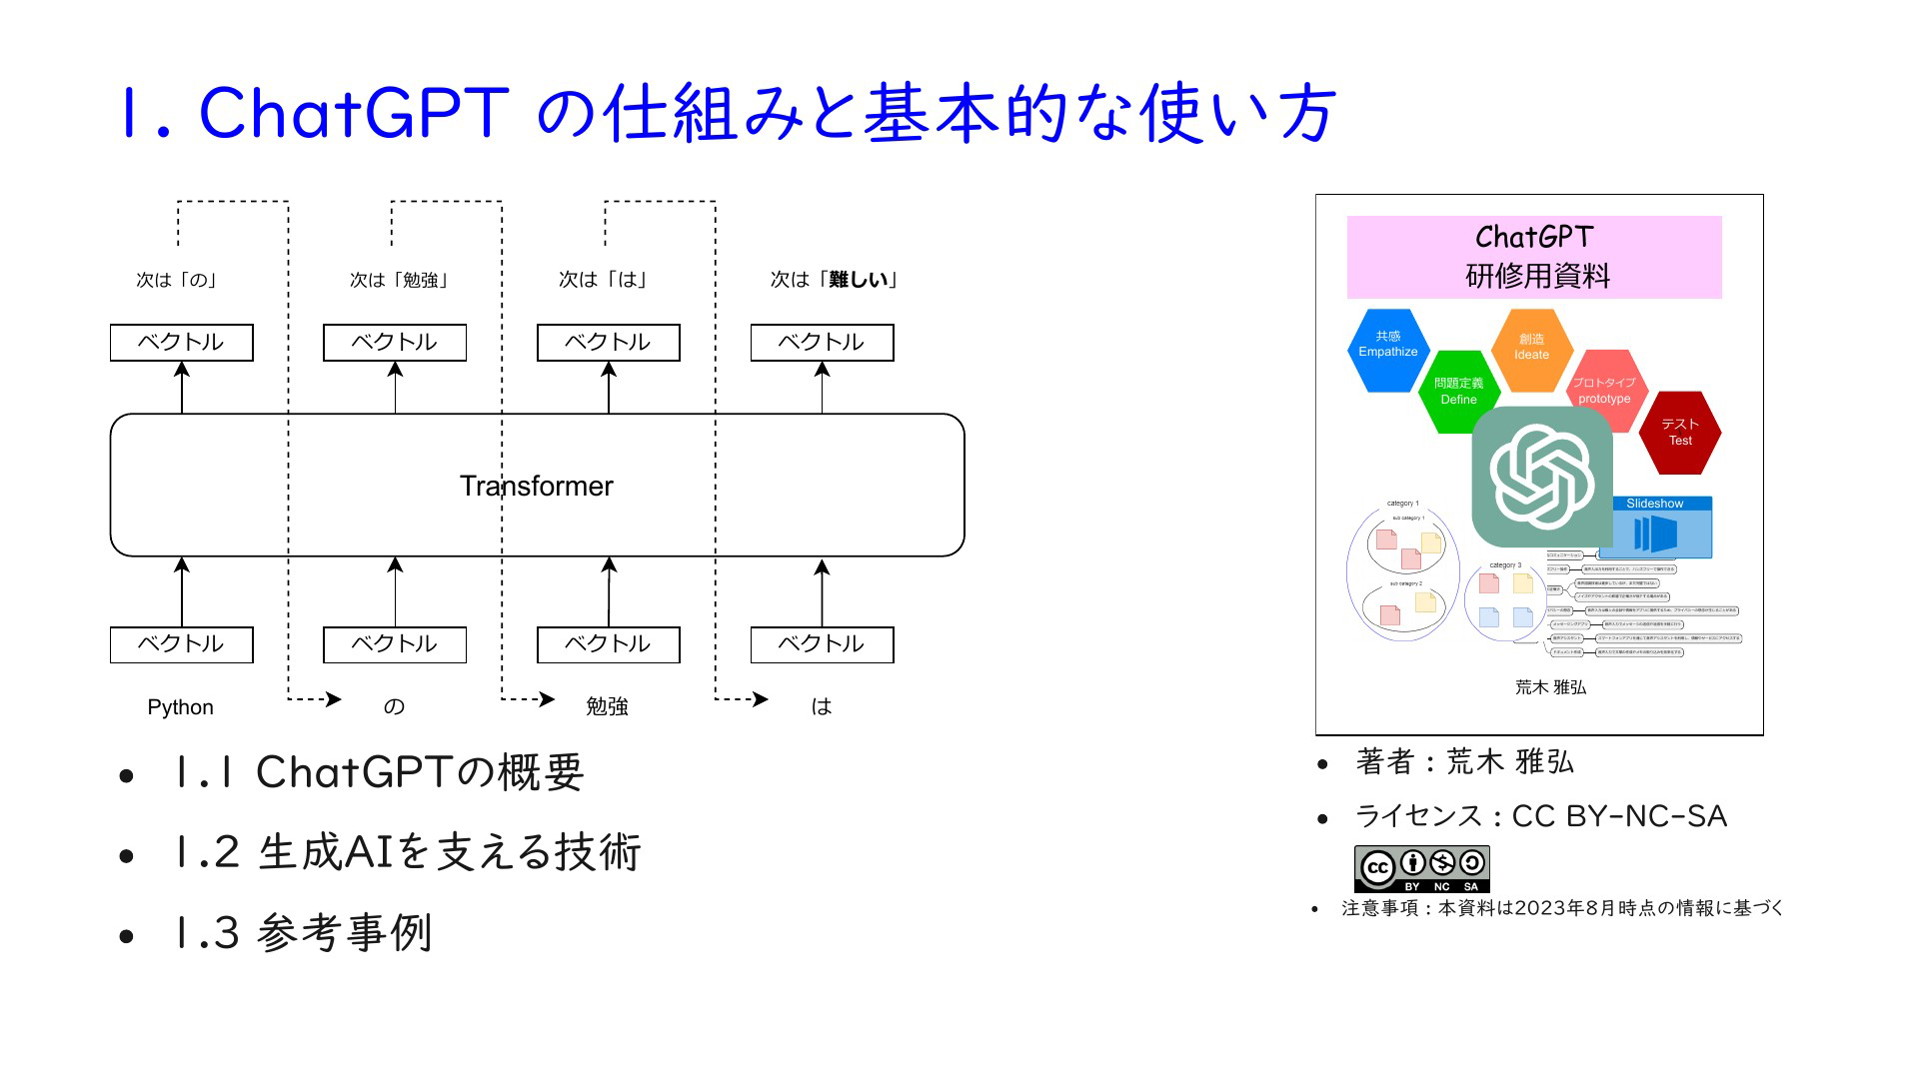 ChatGPT 研修用資料 2. プロンプトエンジニアリングの概要 | ドクセル